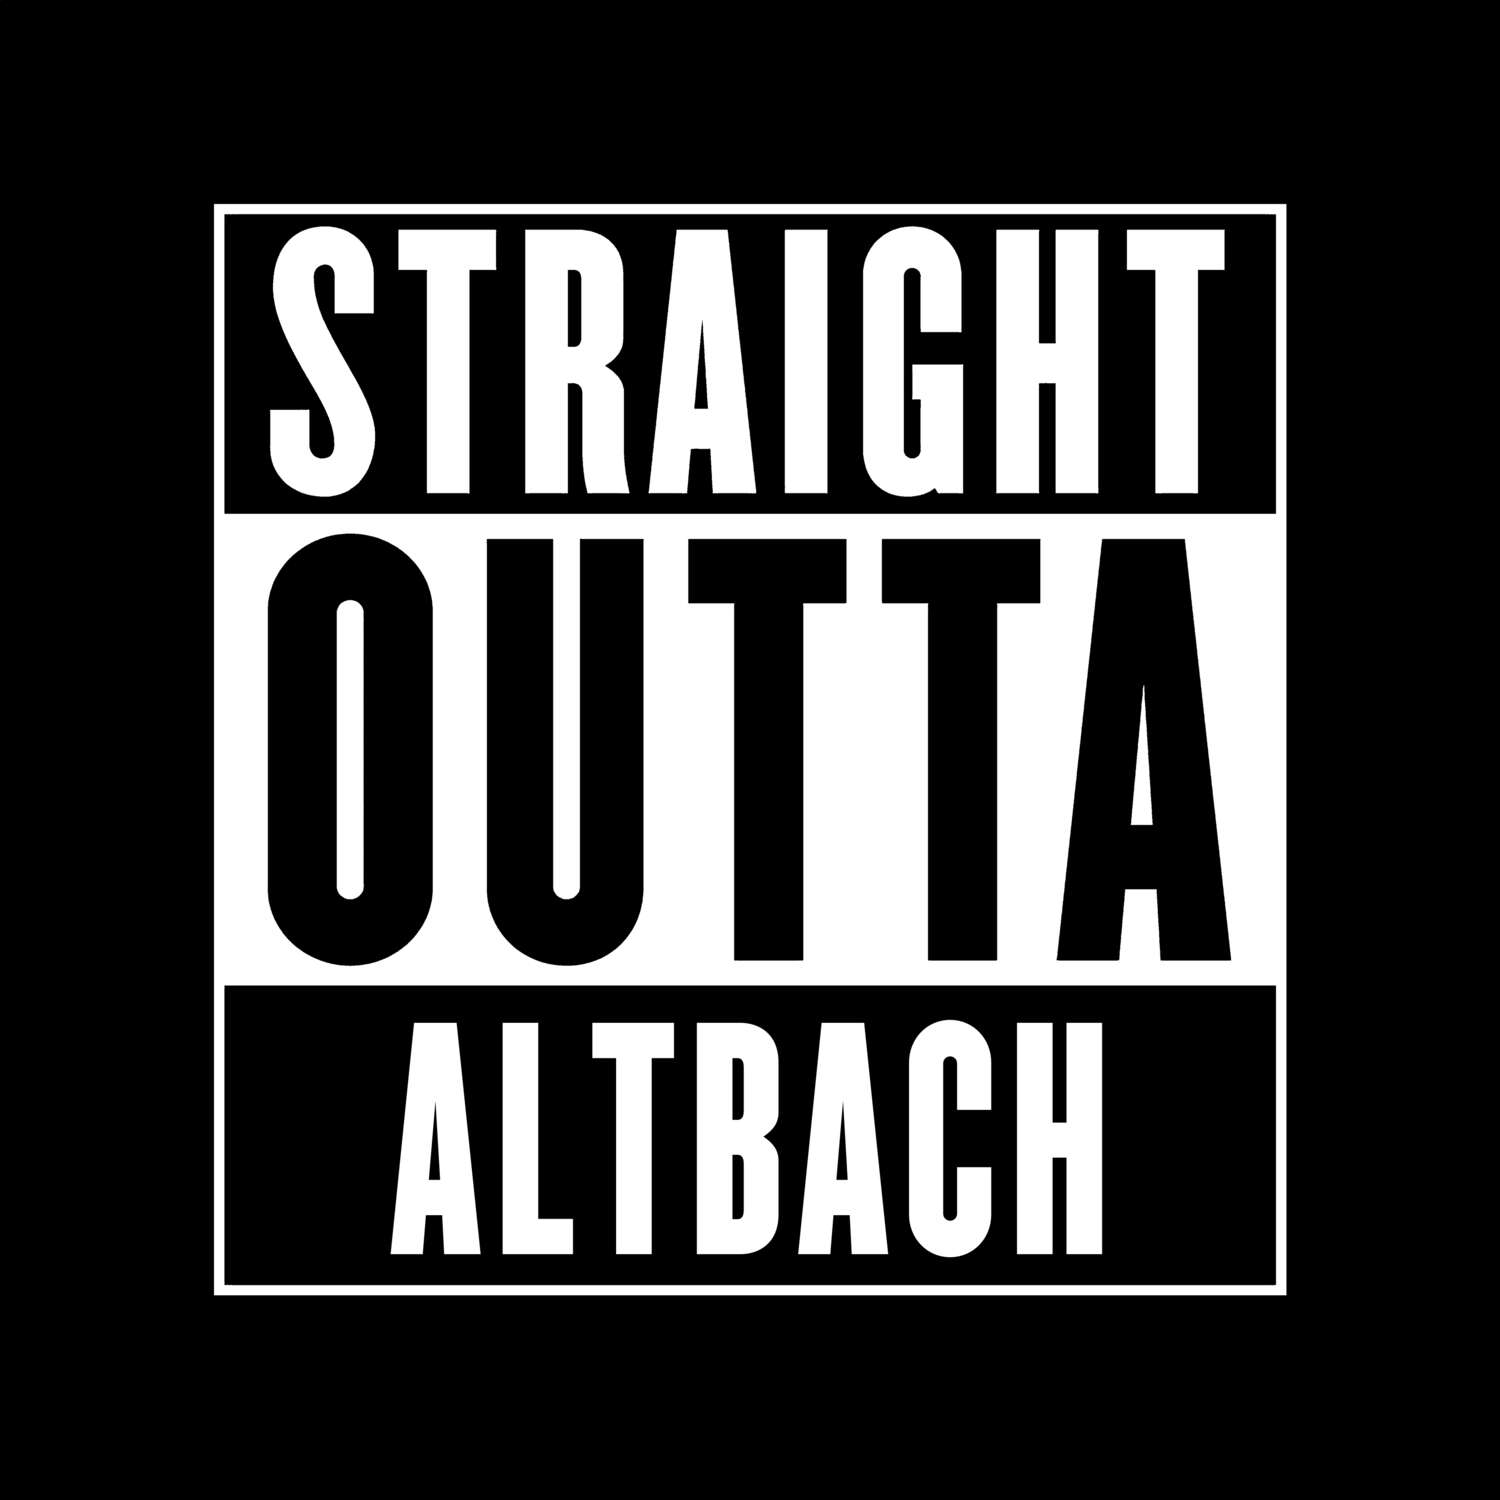 Altbach T-Shirt »Straight Outta«